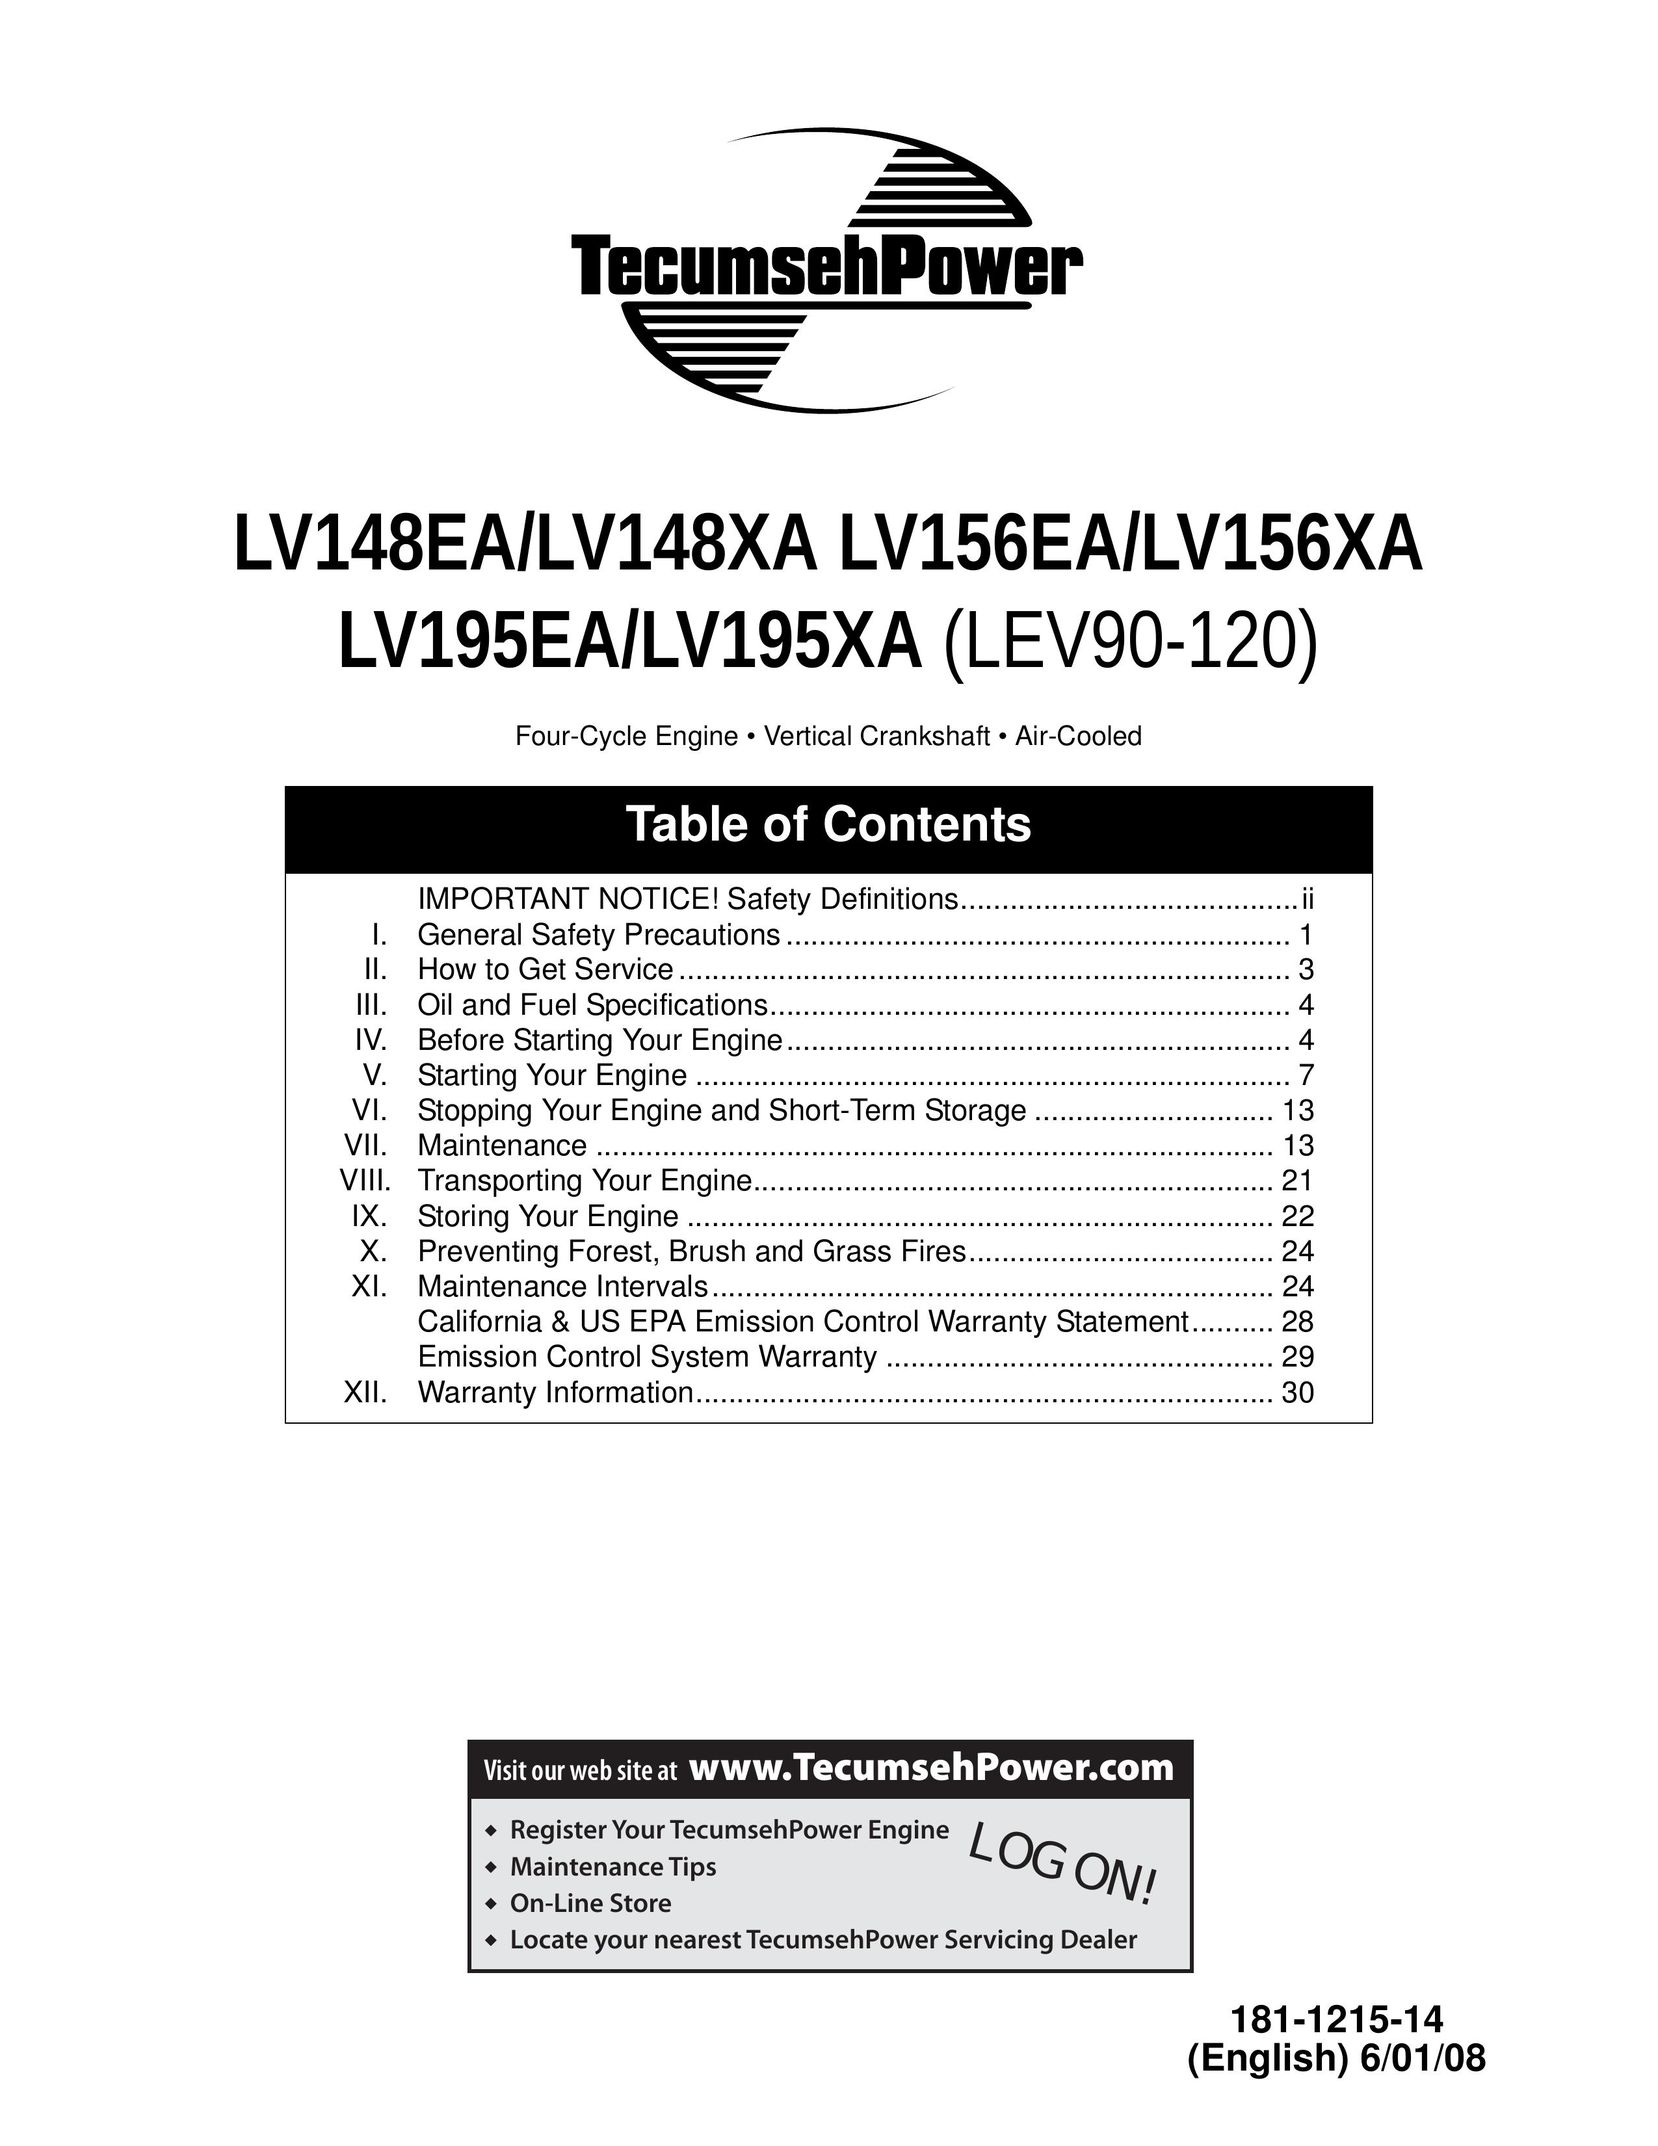 Tecumseh LV148EA Fan User Manual